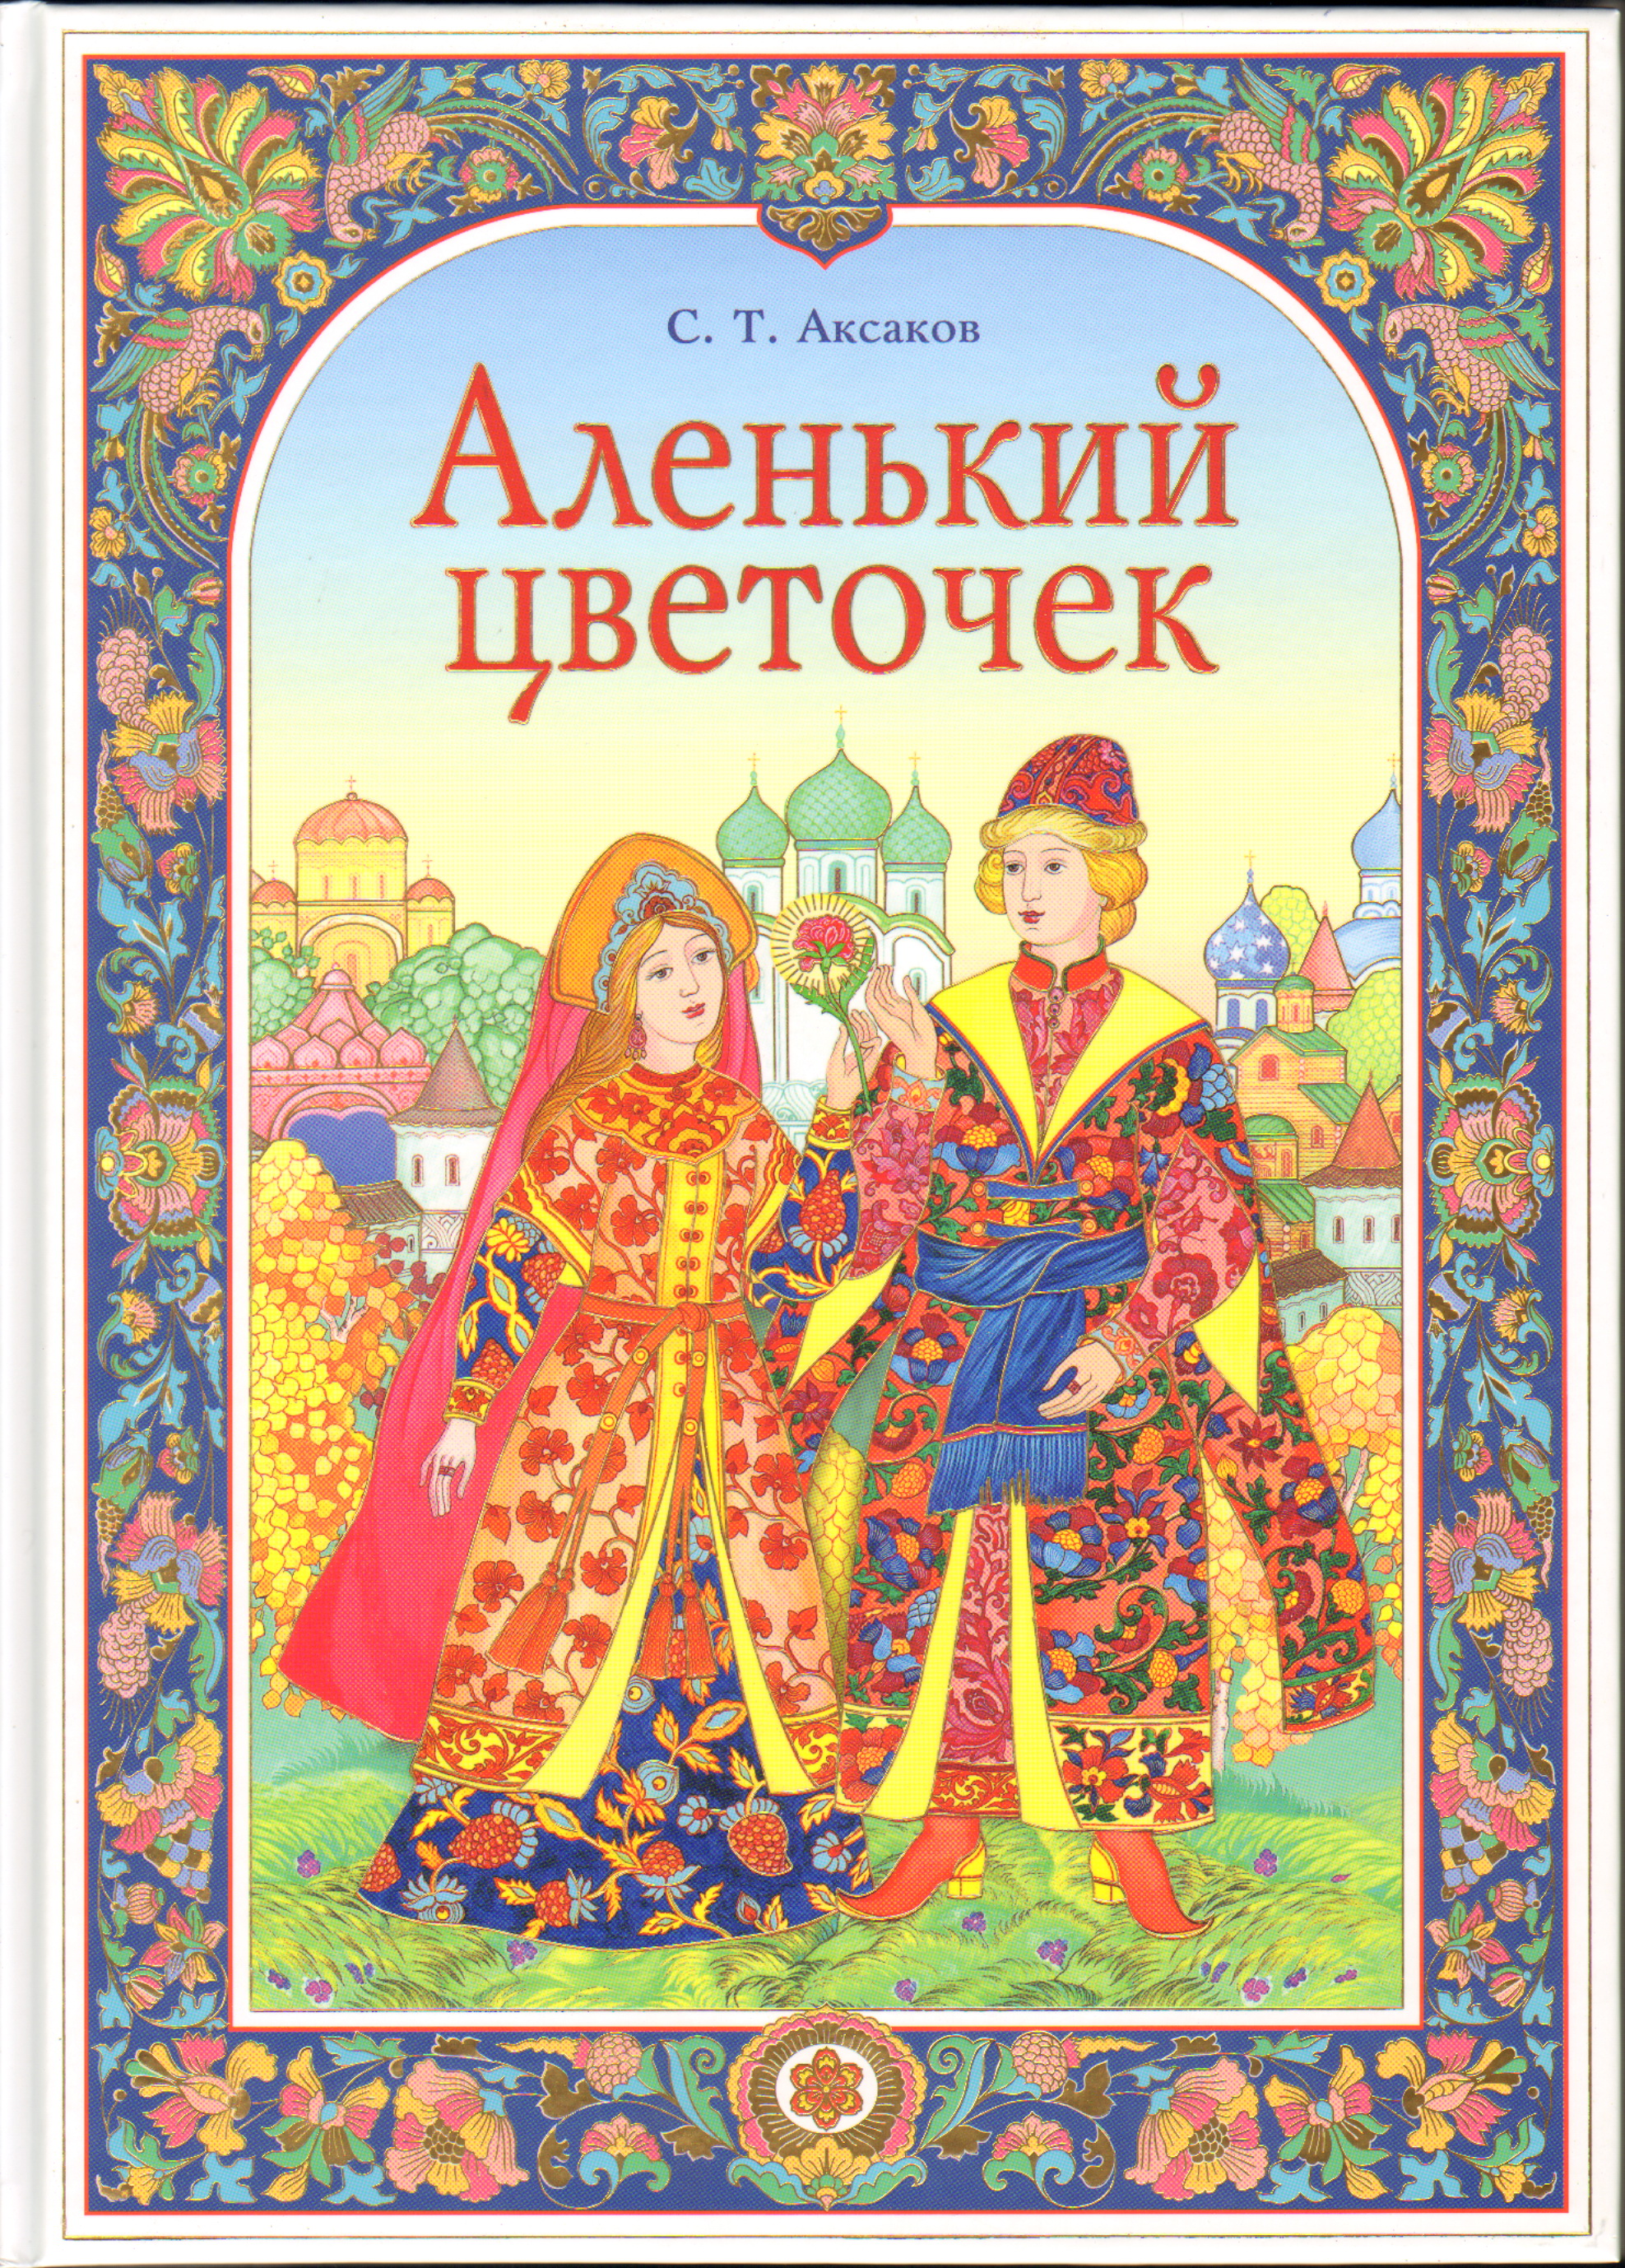 Авторы авторских сказок. Книжка Аксакова «Аленький цветочек».